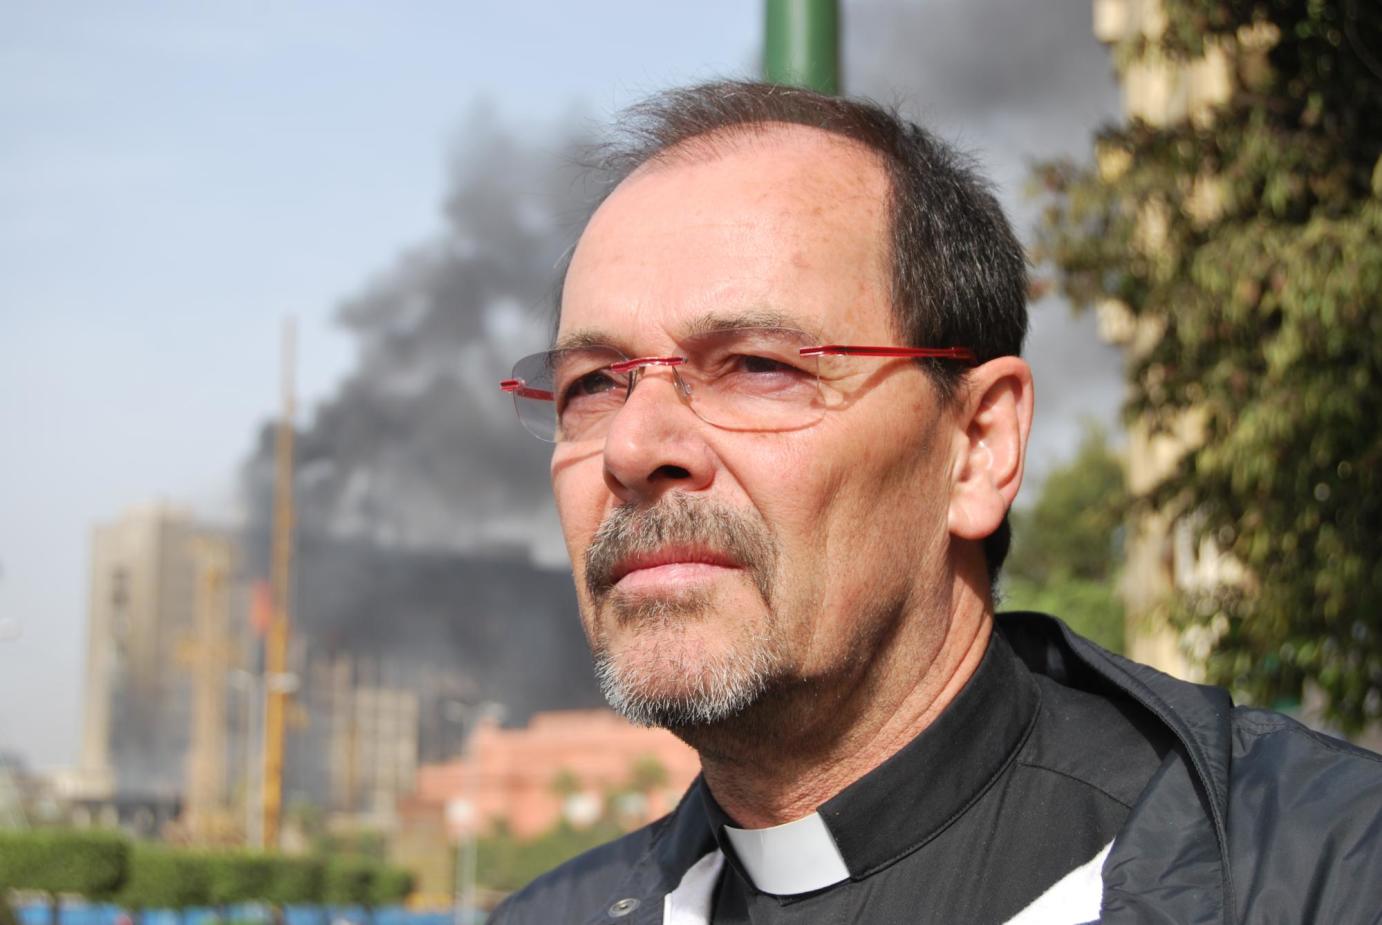 Der diesjährige Missio-Gast im Bistum Mainz ist Monsignore Joachim Schroedel ,der seit 18 Jahren Seelsorger in Ägypten ist. Das Bild zeigt ihn im Januar 2011 zu Beginn der Revolution auf dem Tahirplatz in Kairo. (c) privat